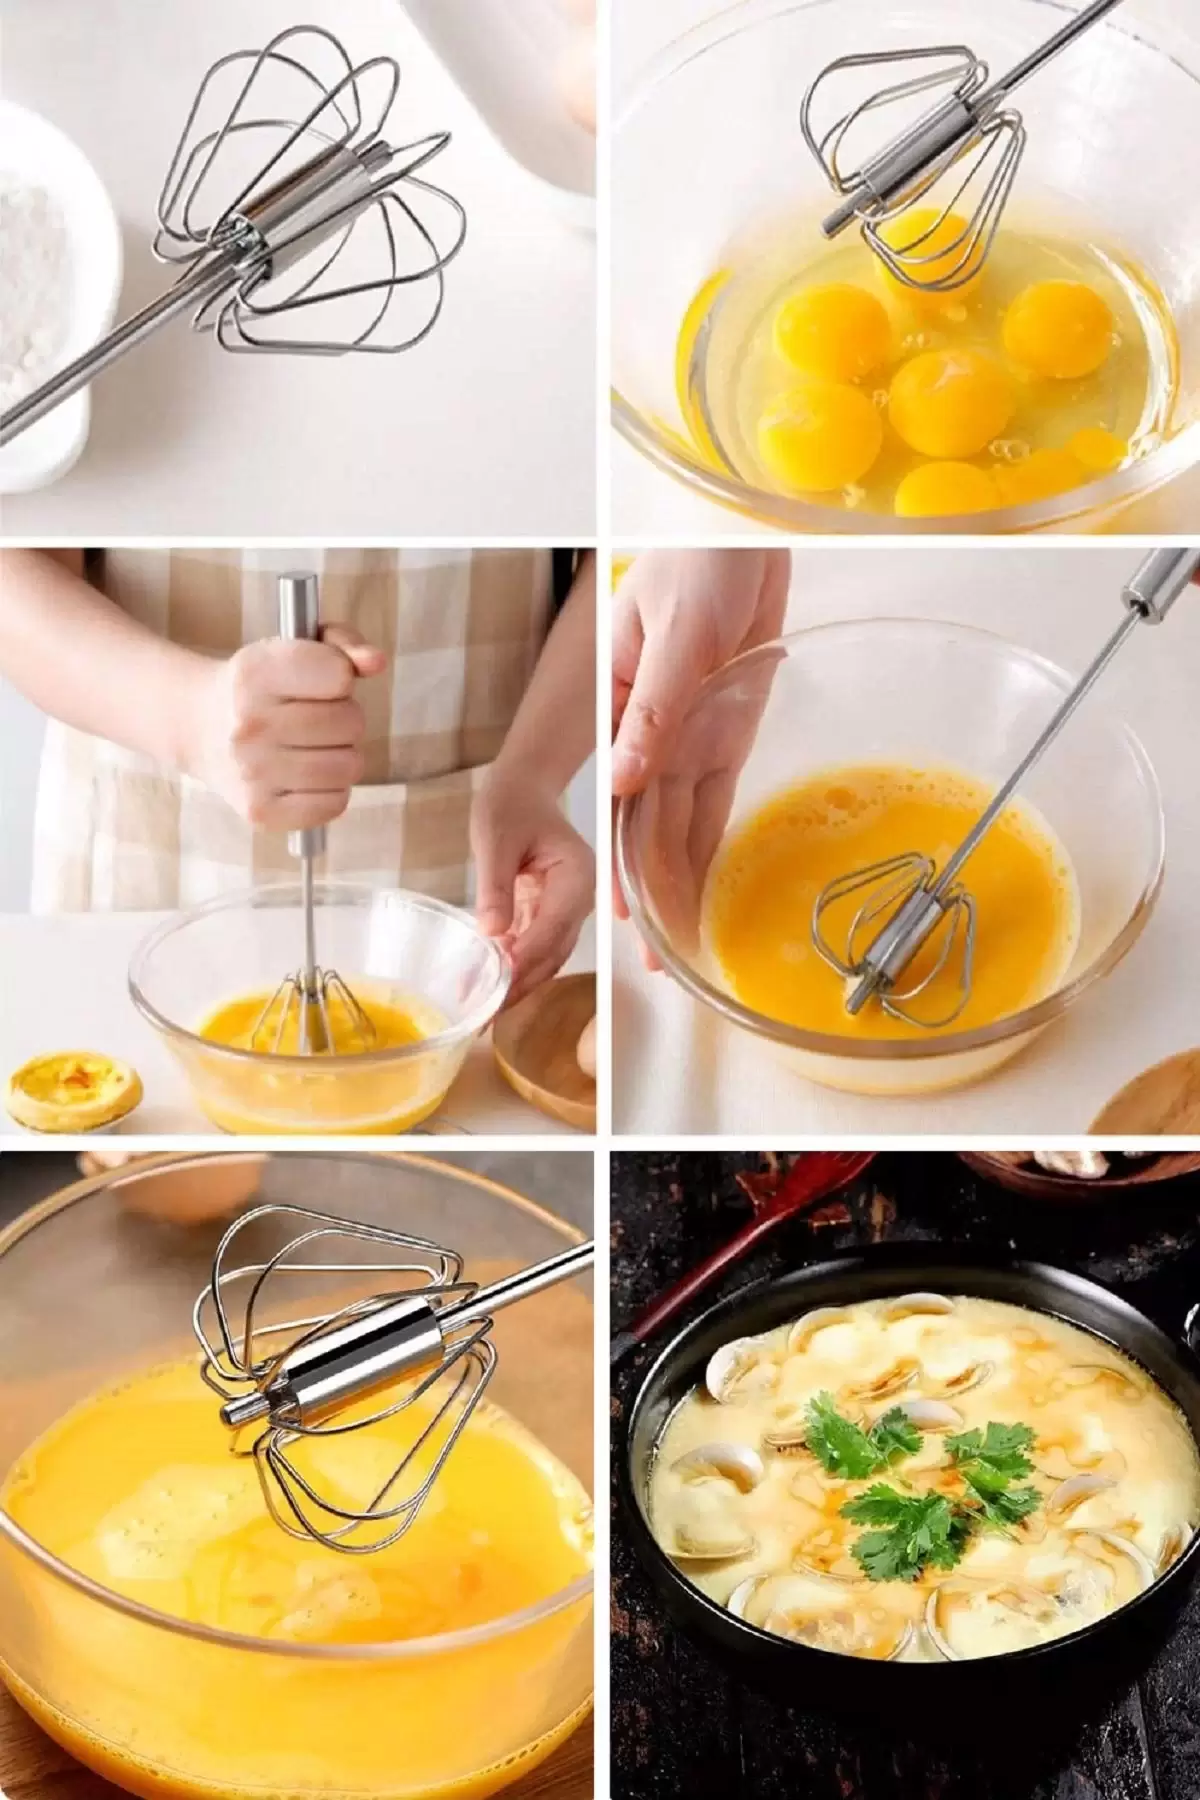 Mutfak Maydanoz Doğrama Makası Çelik Yumurta Çırpıcı Tungsten Bıçak Bileyici Metal Patates Soyacak